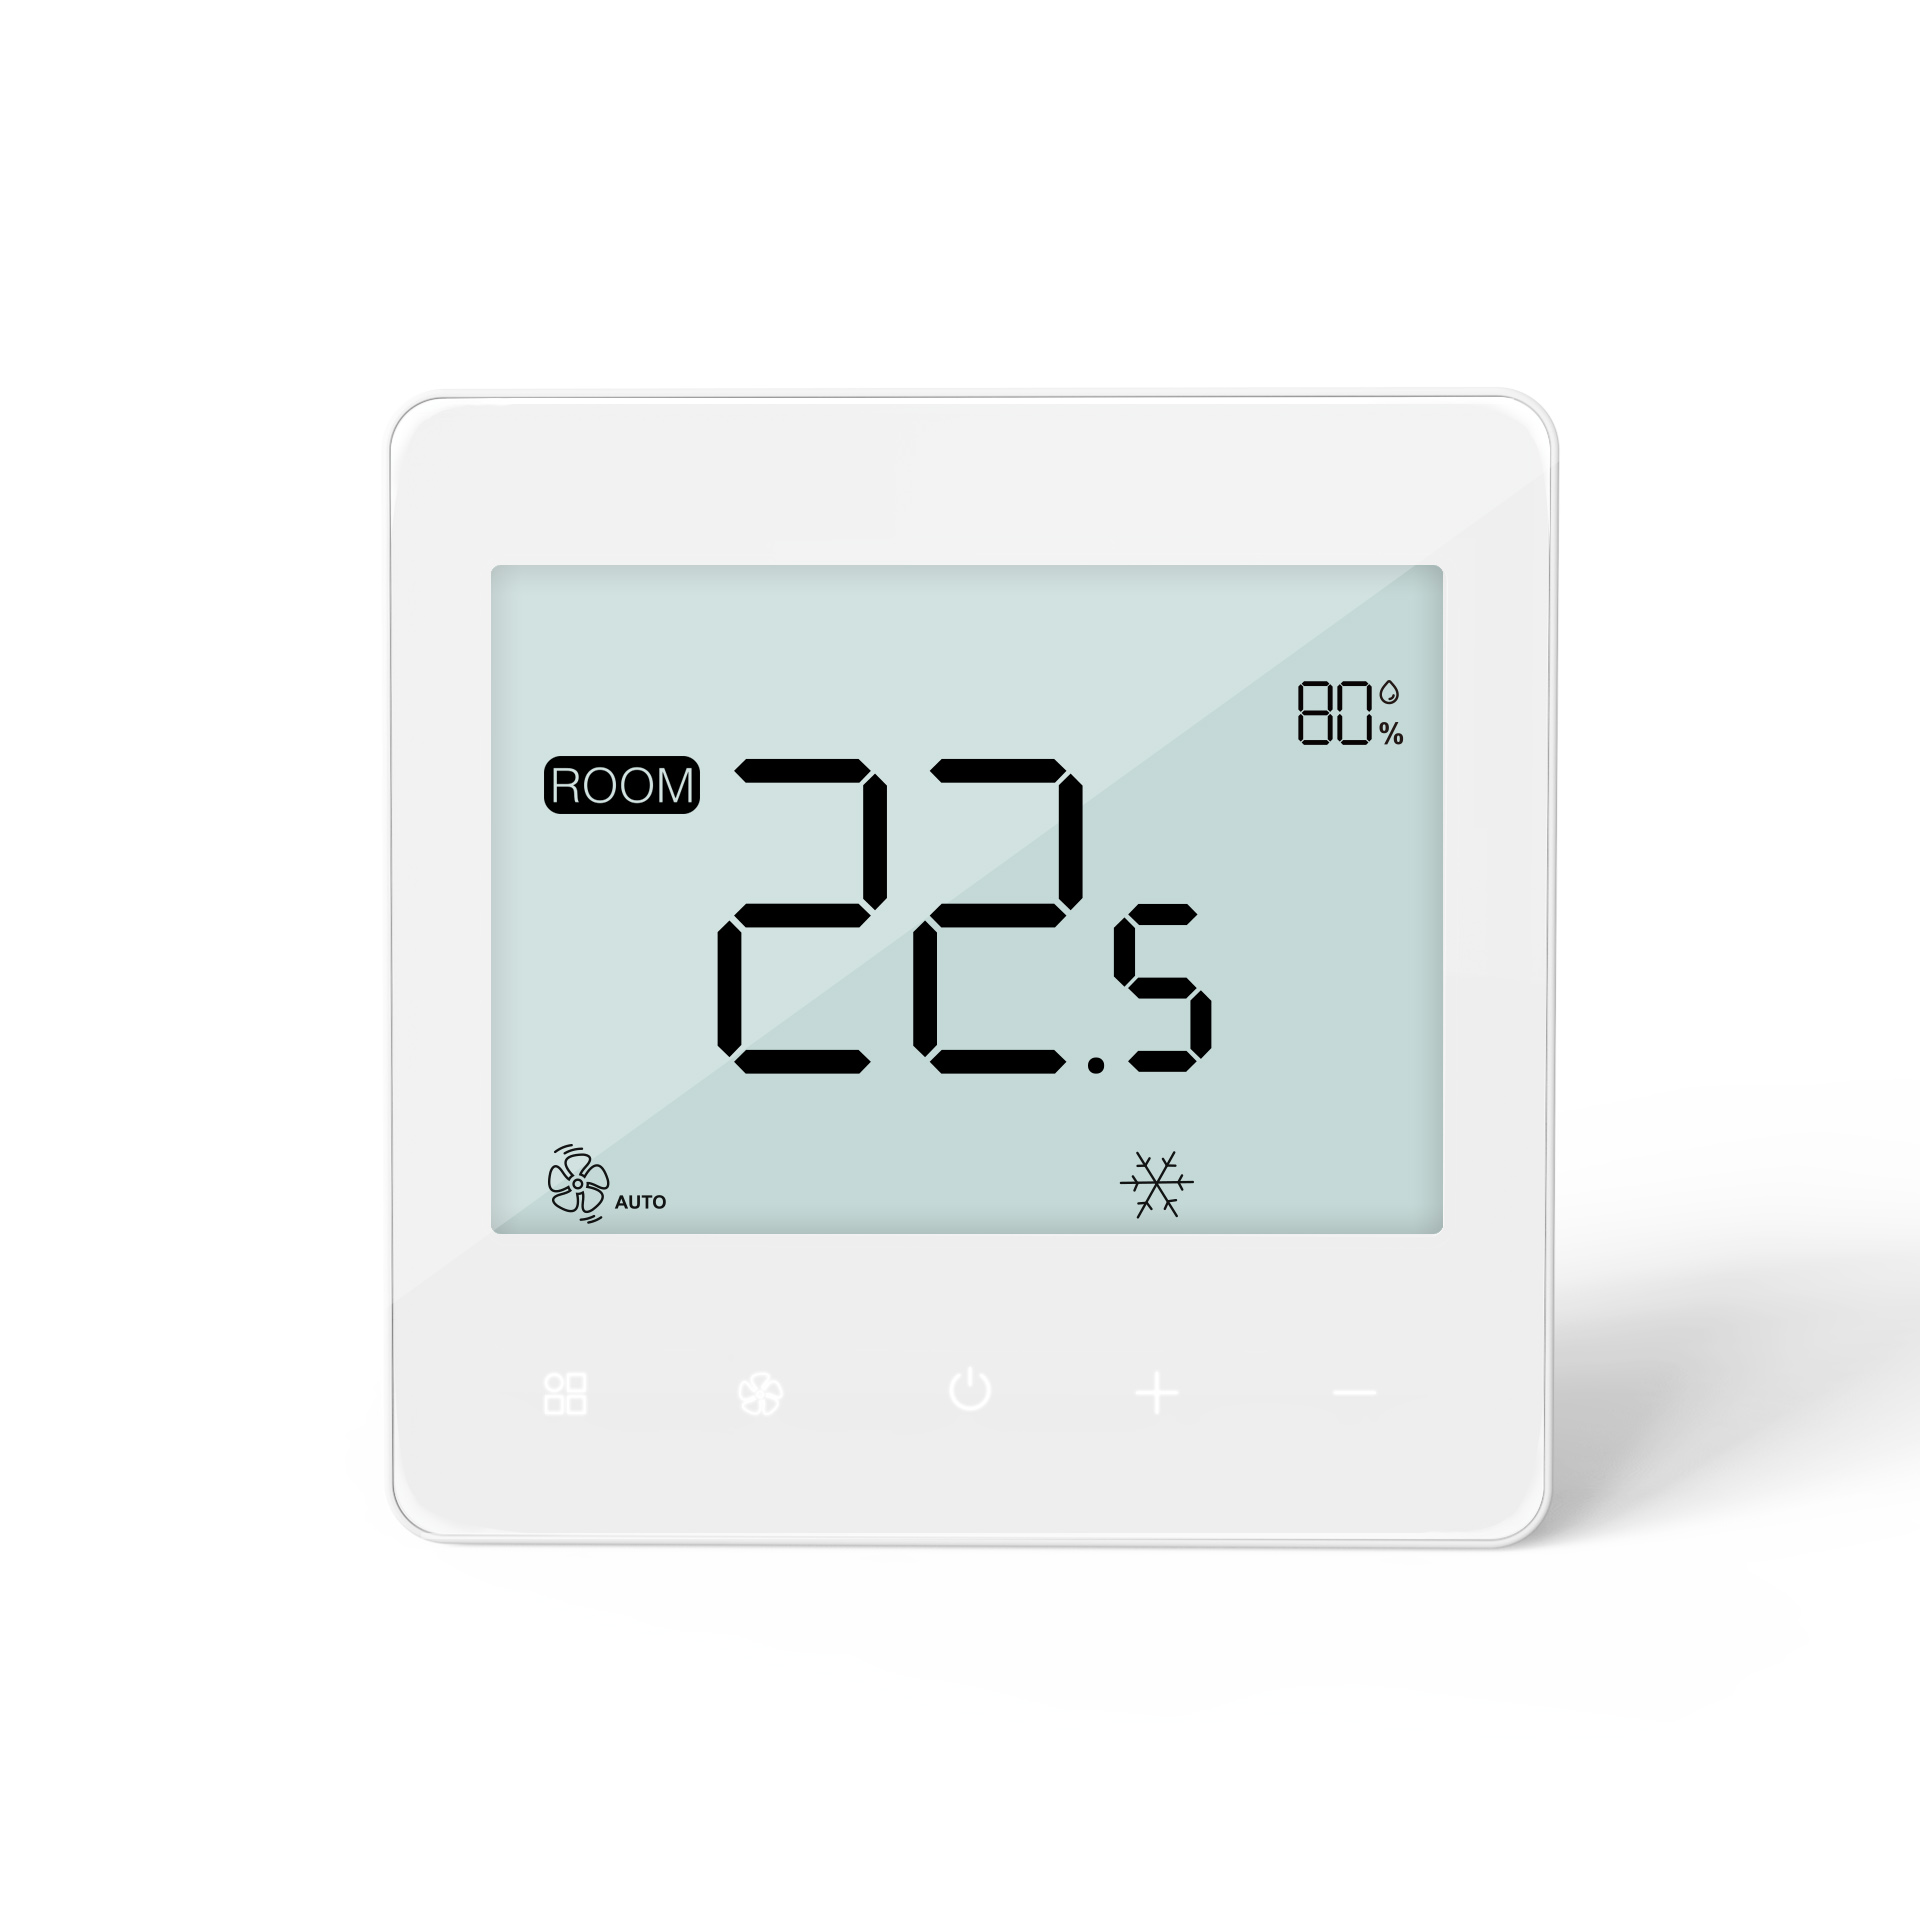 230Vac RS485 intelligent FCU thermostat